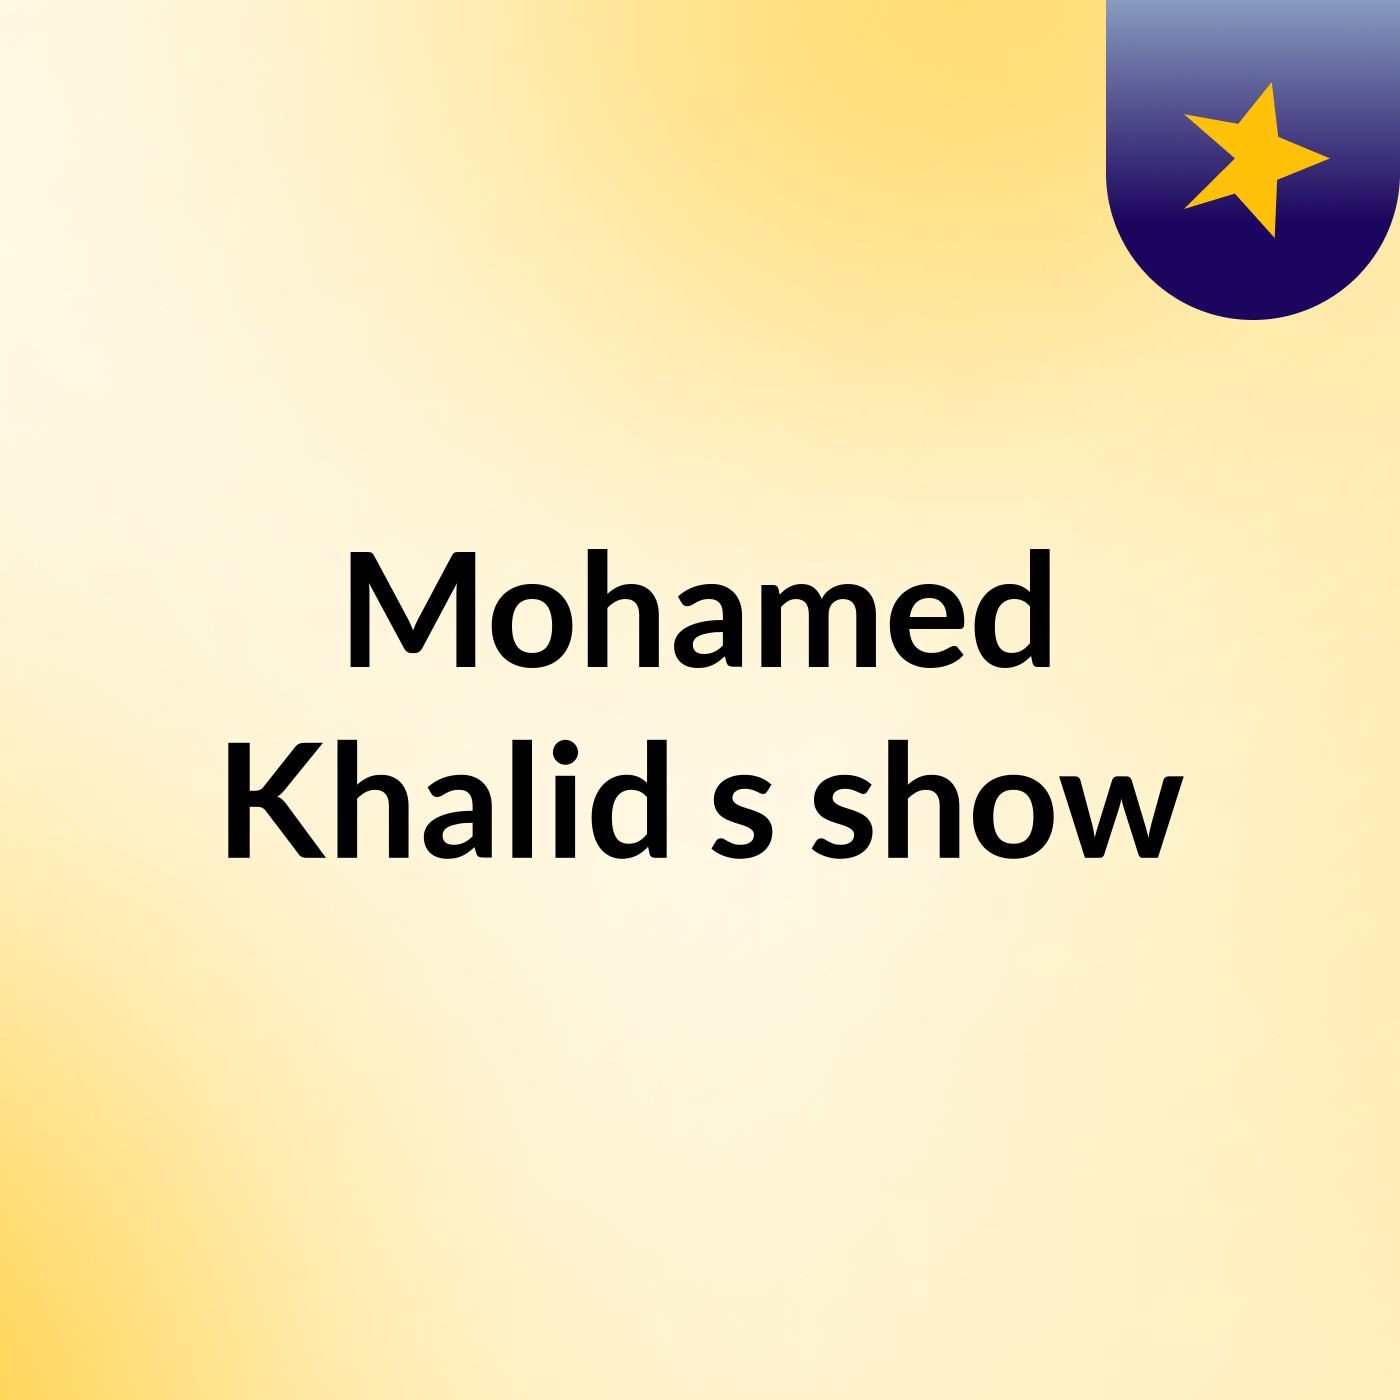 Mohamed Khalid's show